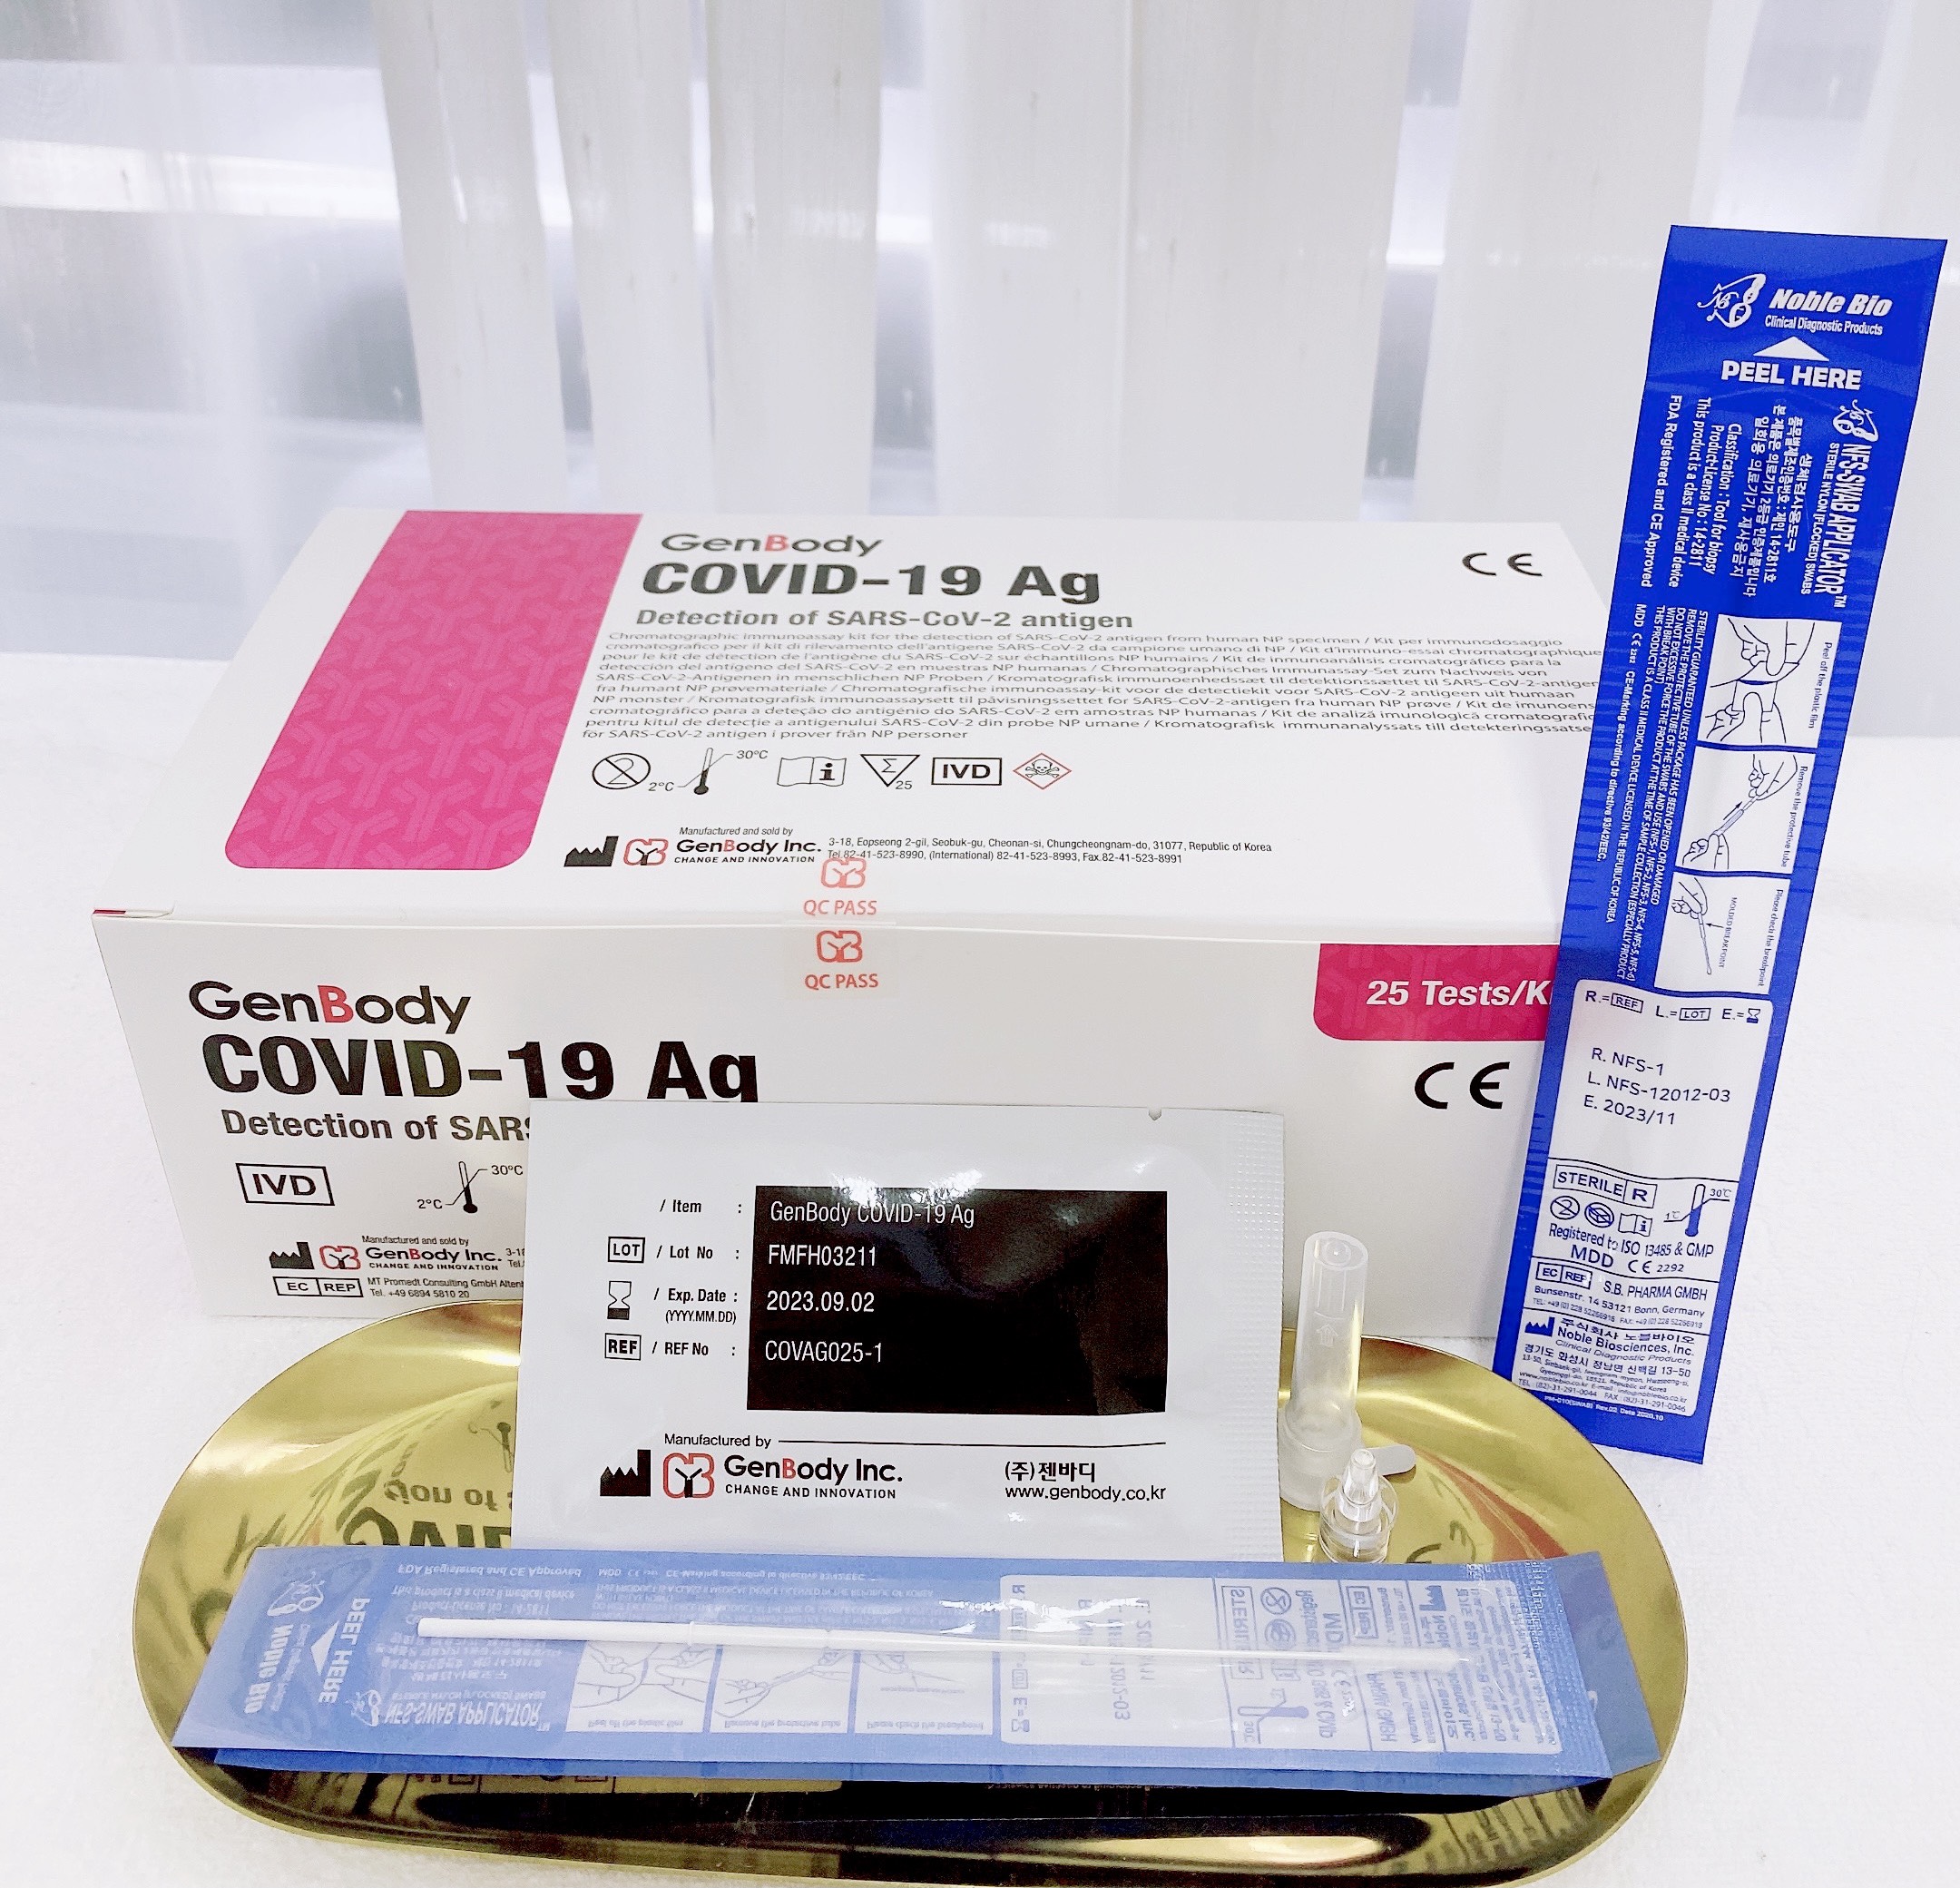 Kit test GenBody COVID-19 Ag - Hàn Quốc (combo 3 bộ kit)